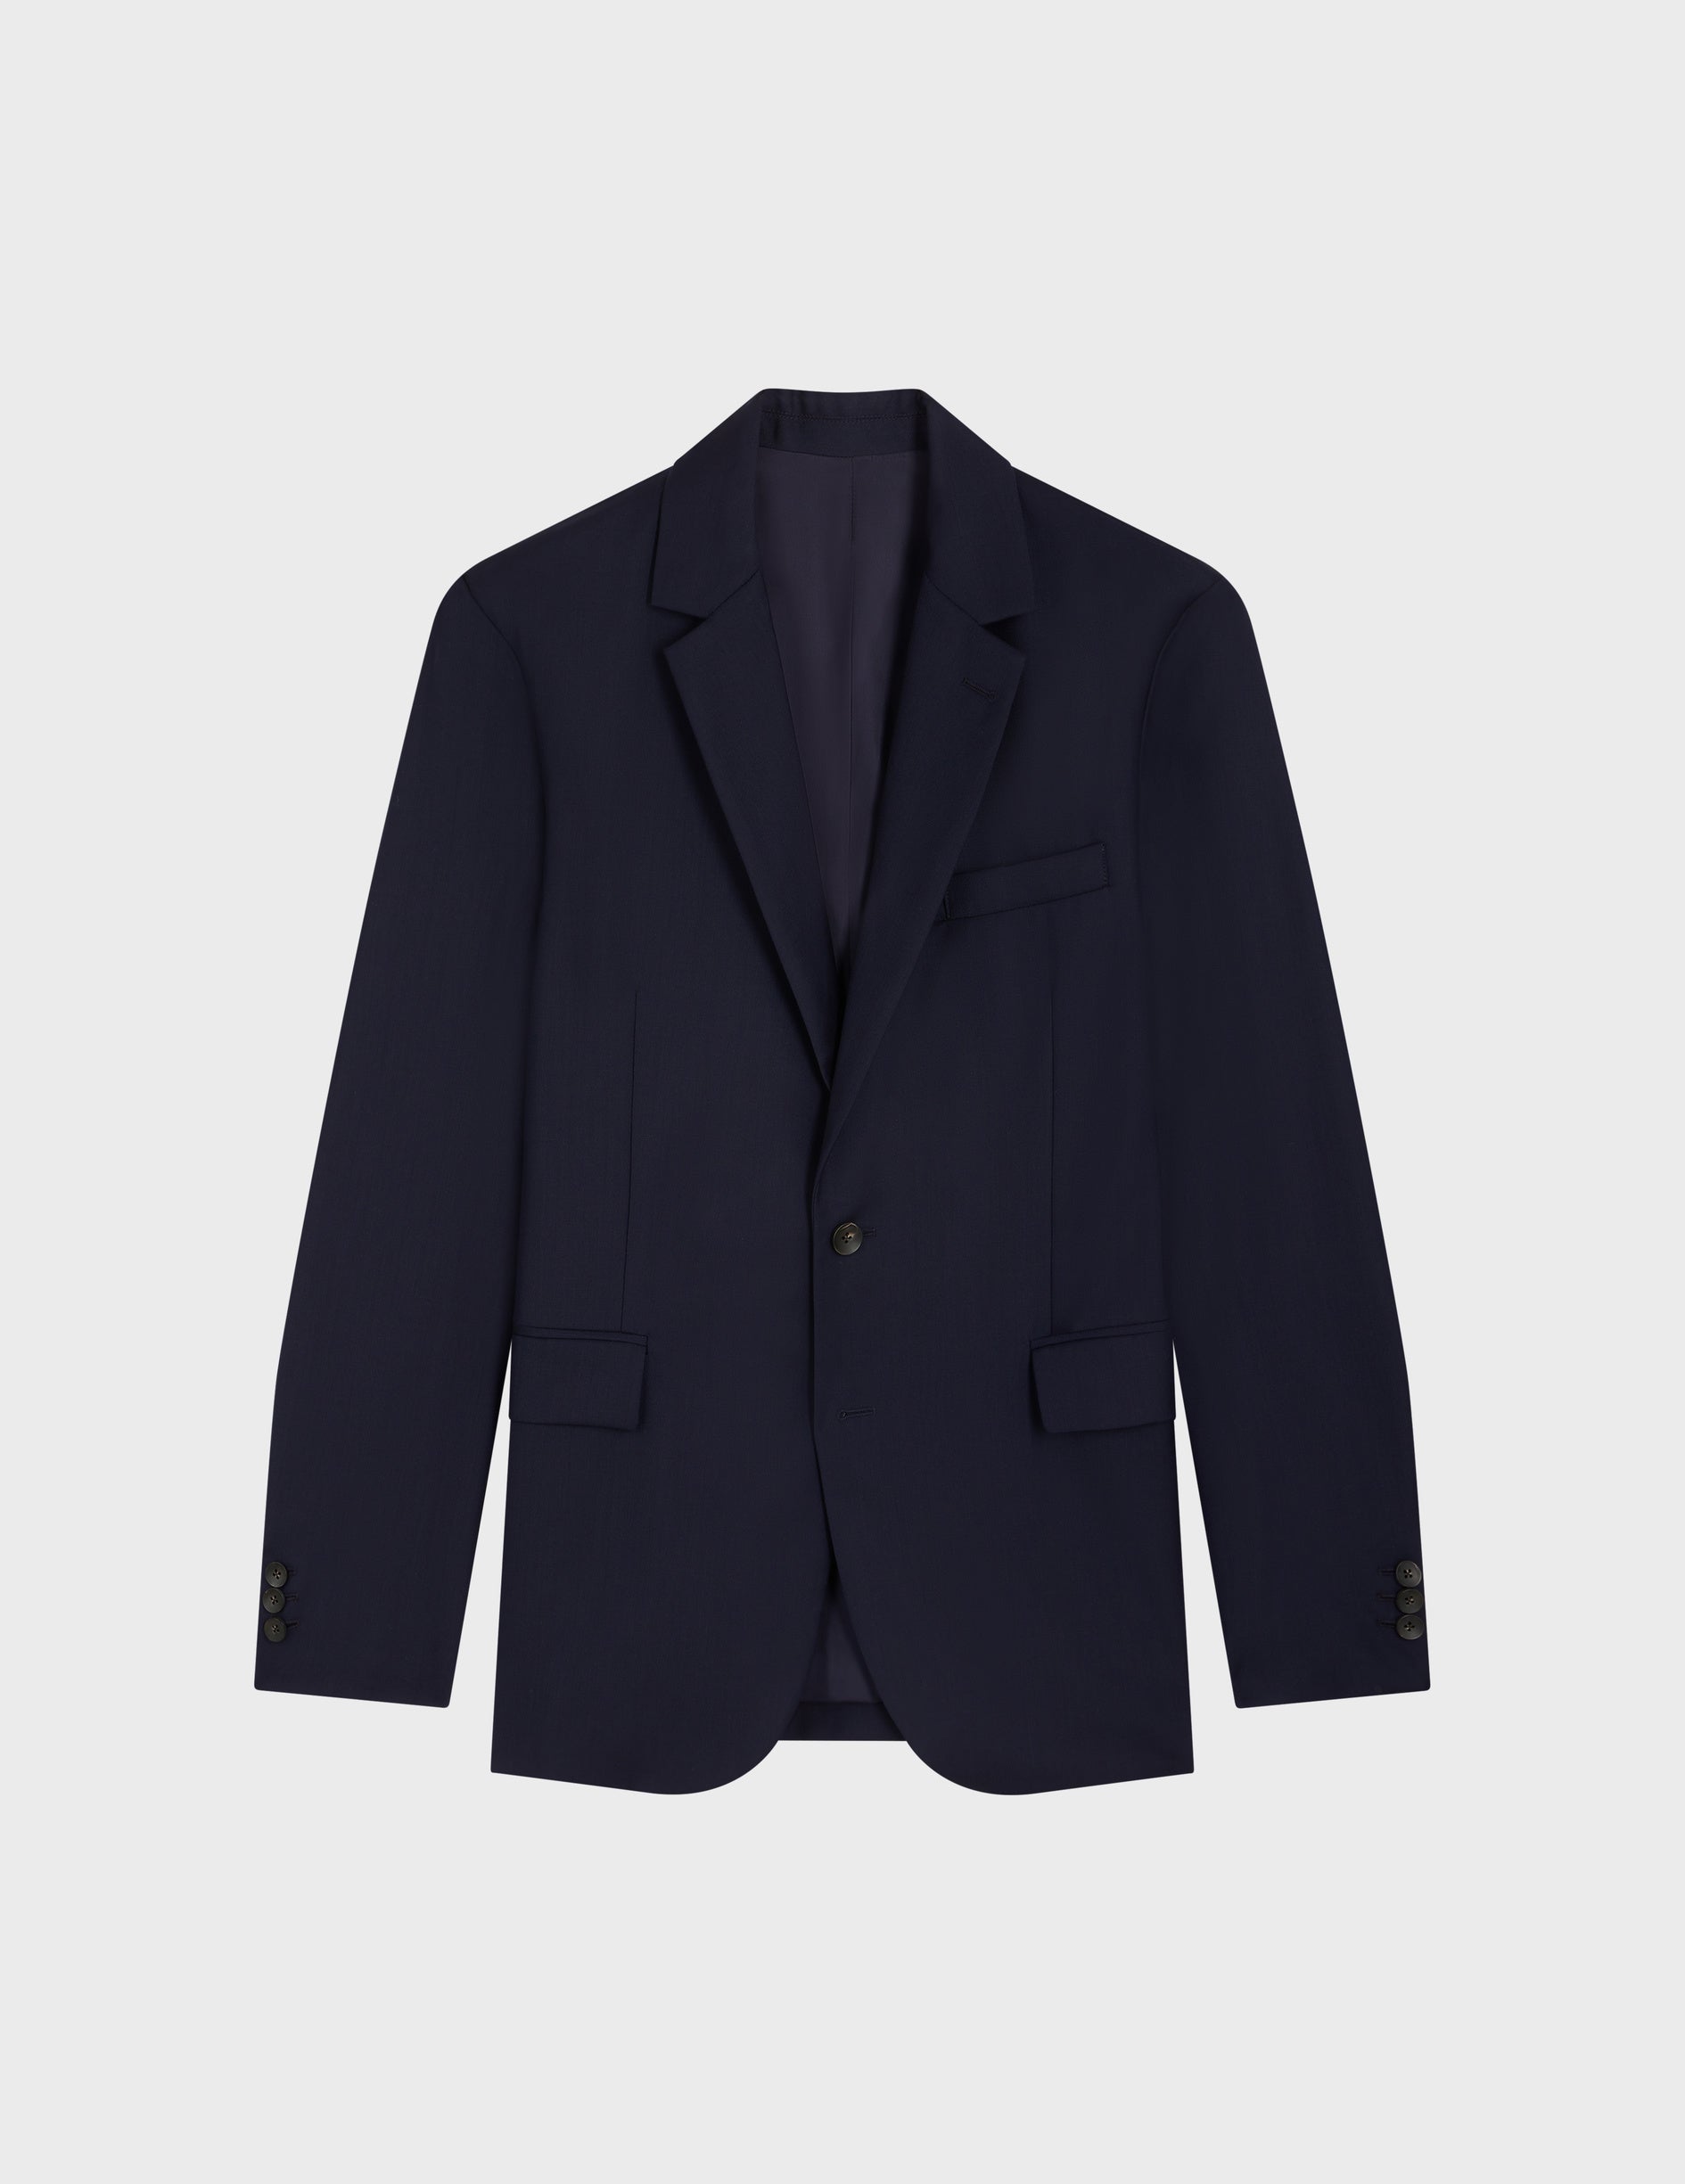 Navy wool twill Gordon suit jacket